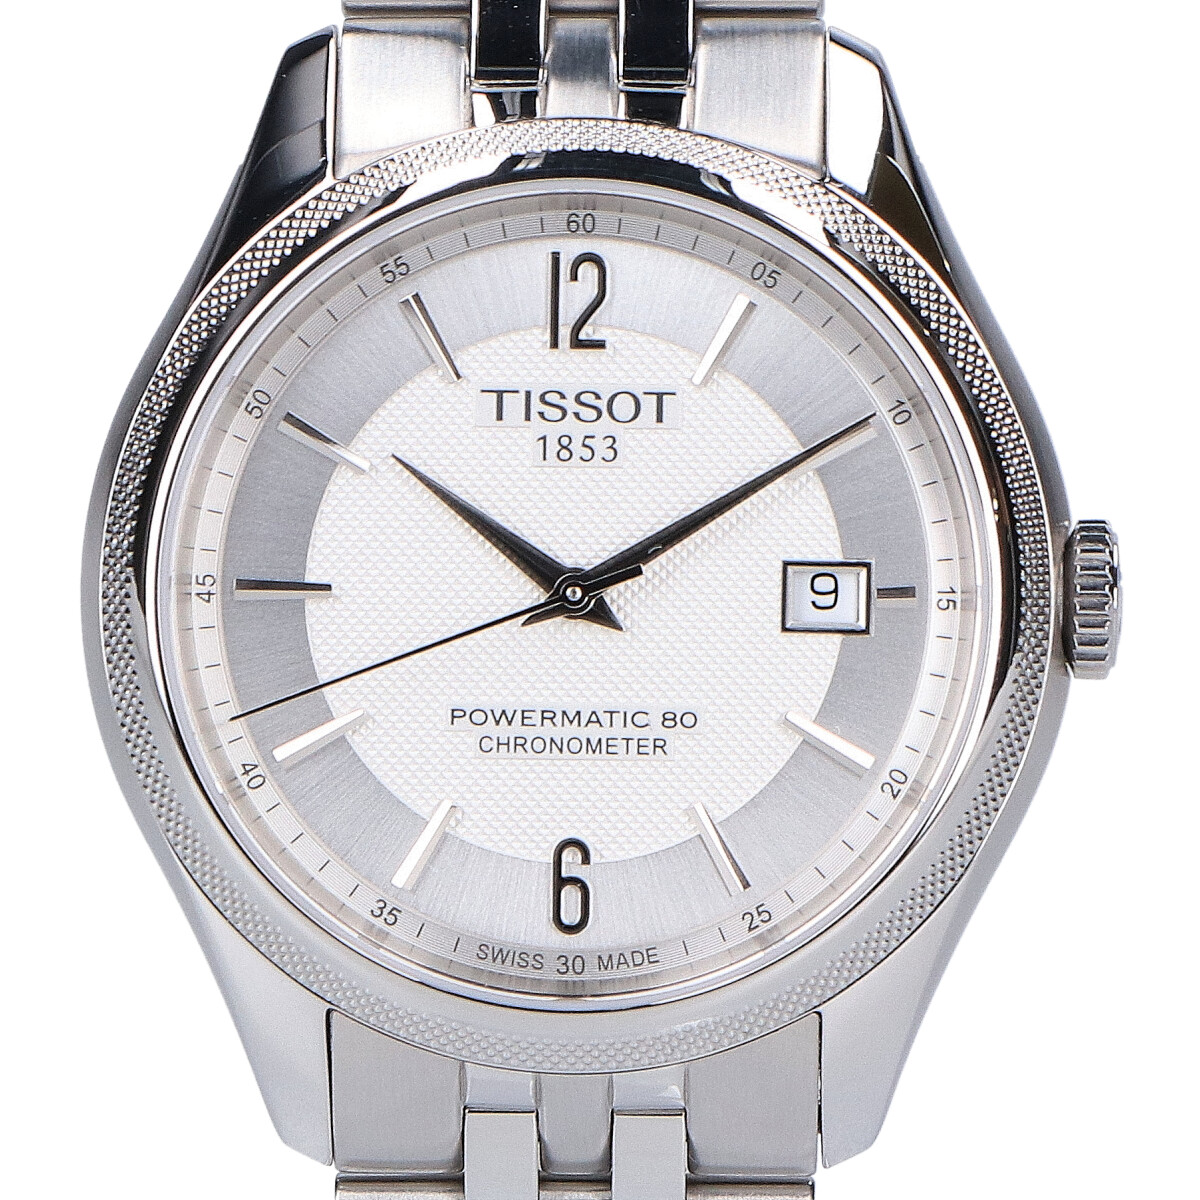 ティソのT108.408.11.037.00 T-クラシックバラードパワーマティック80 自動巻き腕時計の買取実績です。